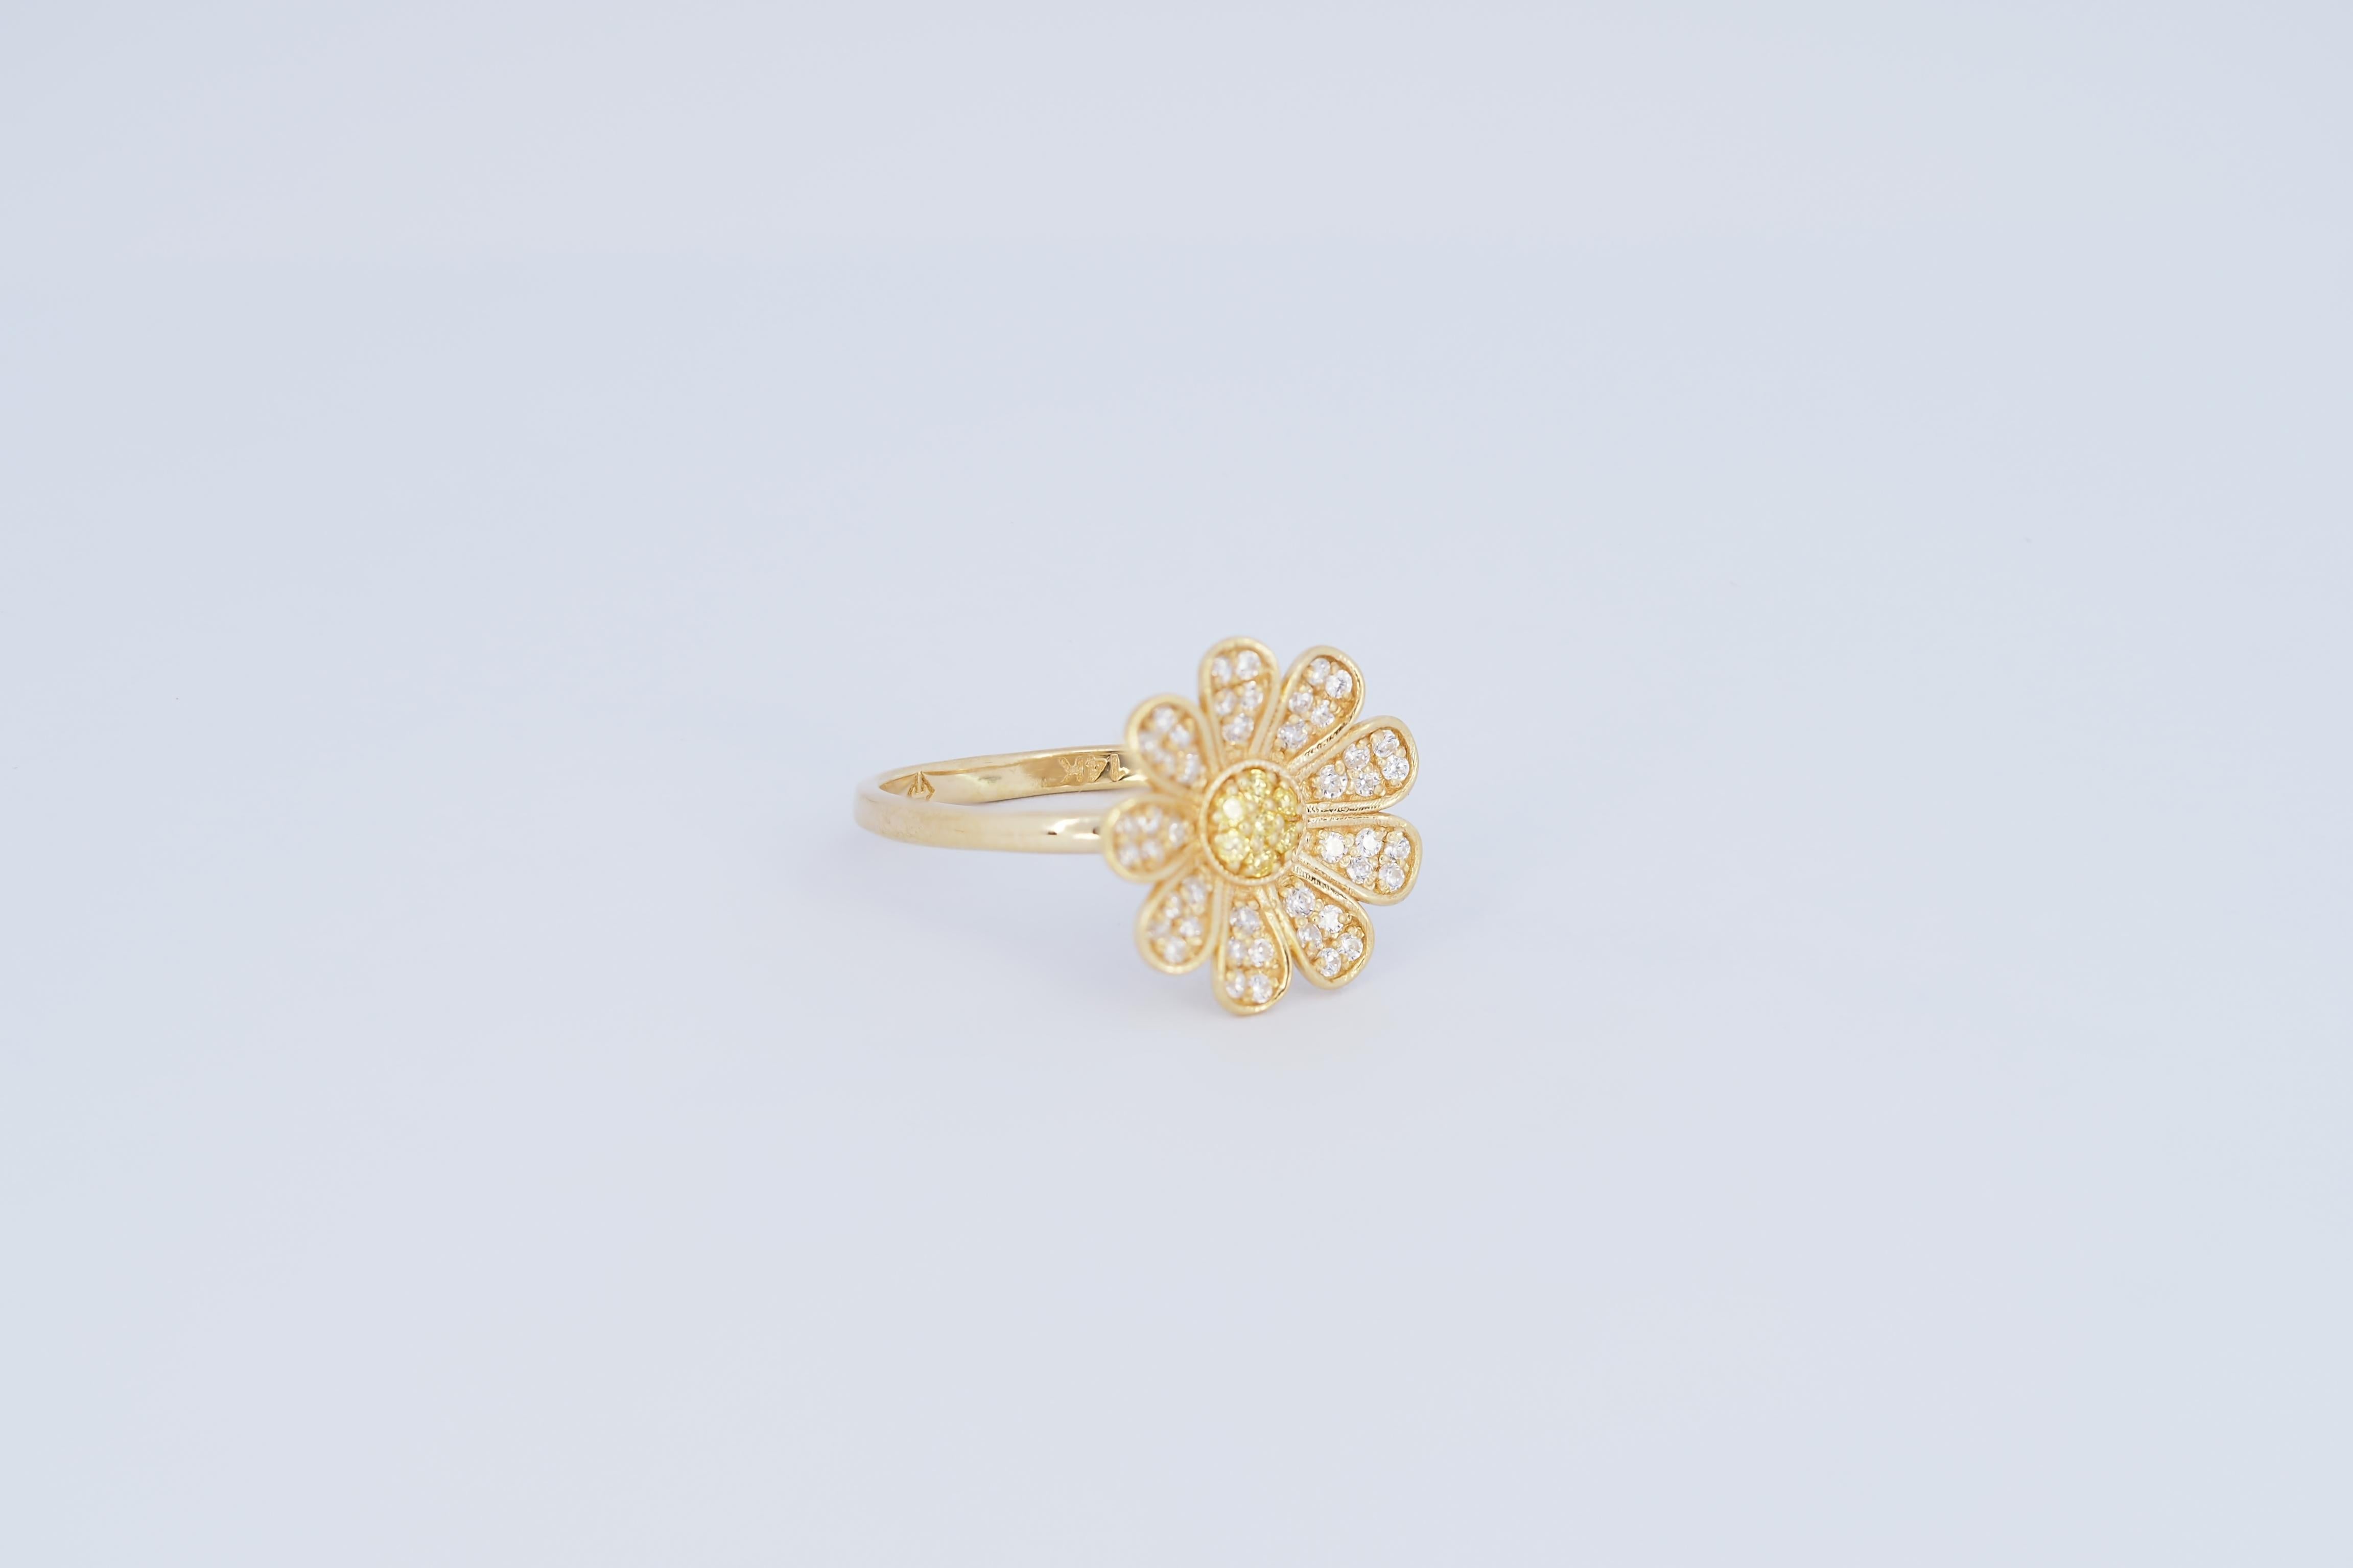 Daisy flower 14k gold ring For Sale 2